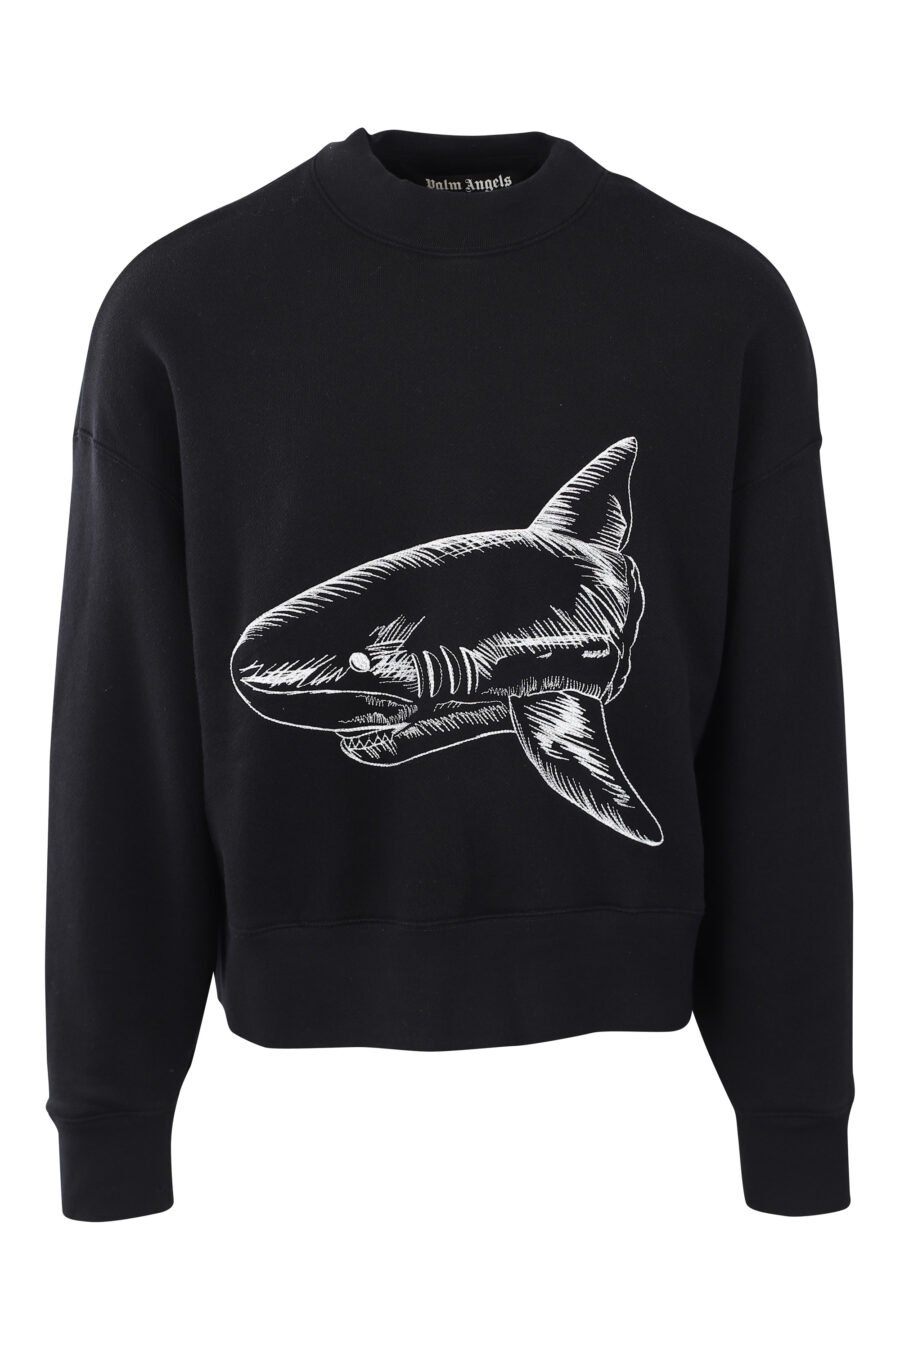 Schwarzes Sweatshirt mit weißem gesticktem Hai und Logo auf dem Rücken - IMG 2565